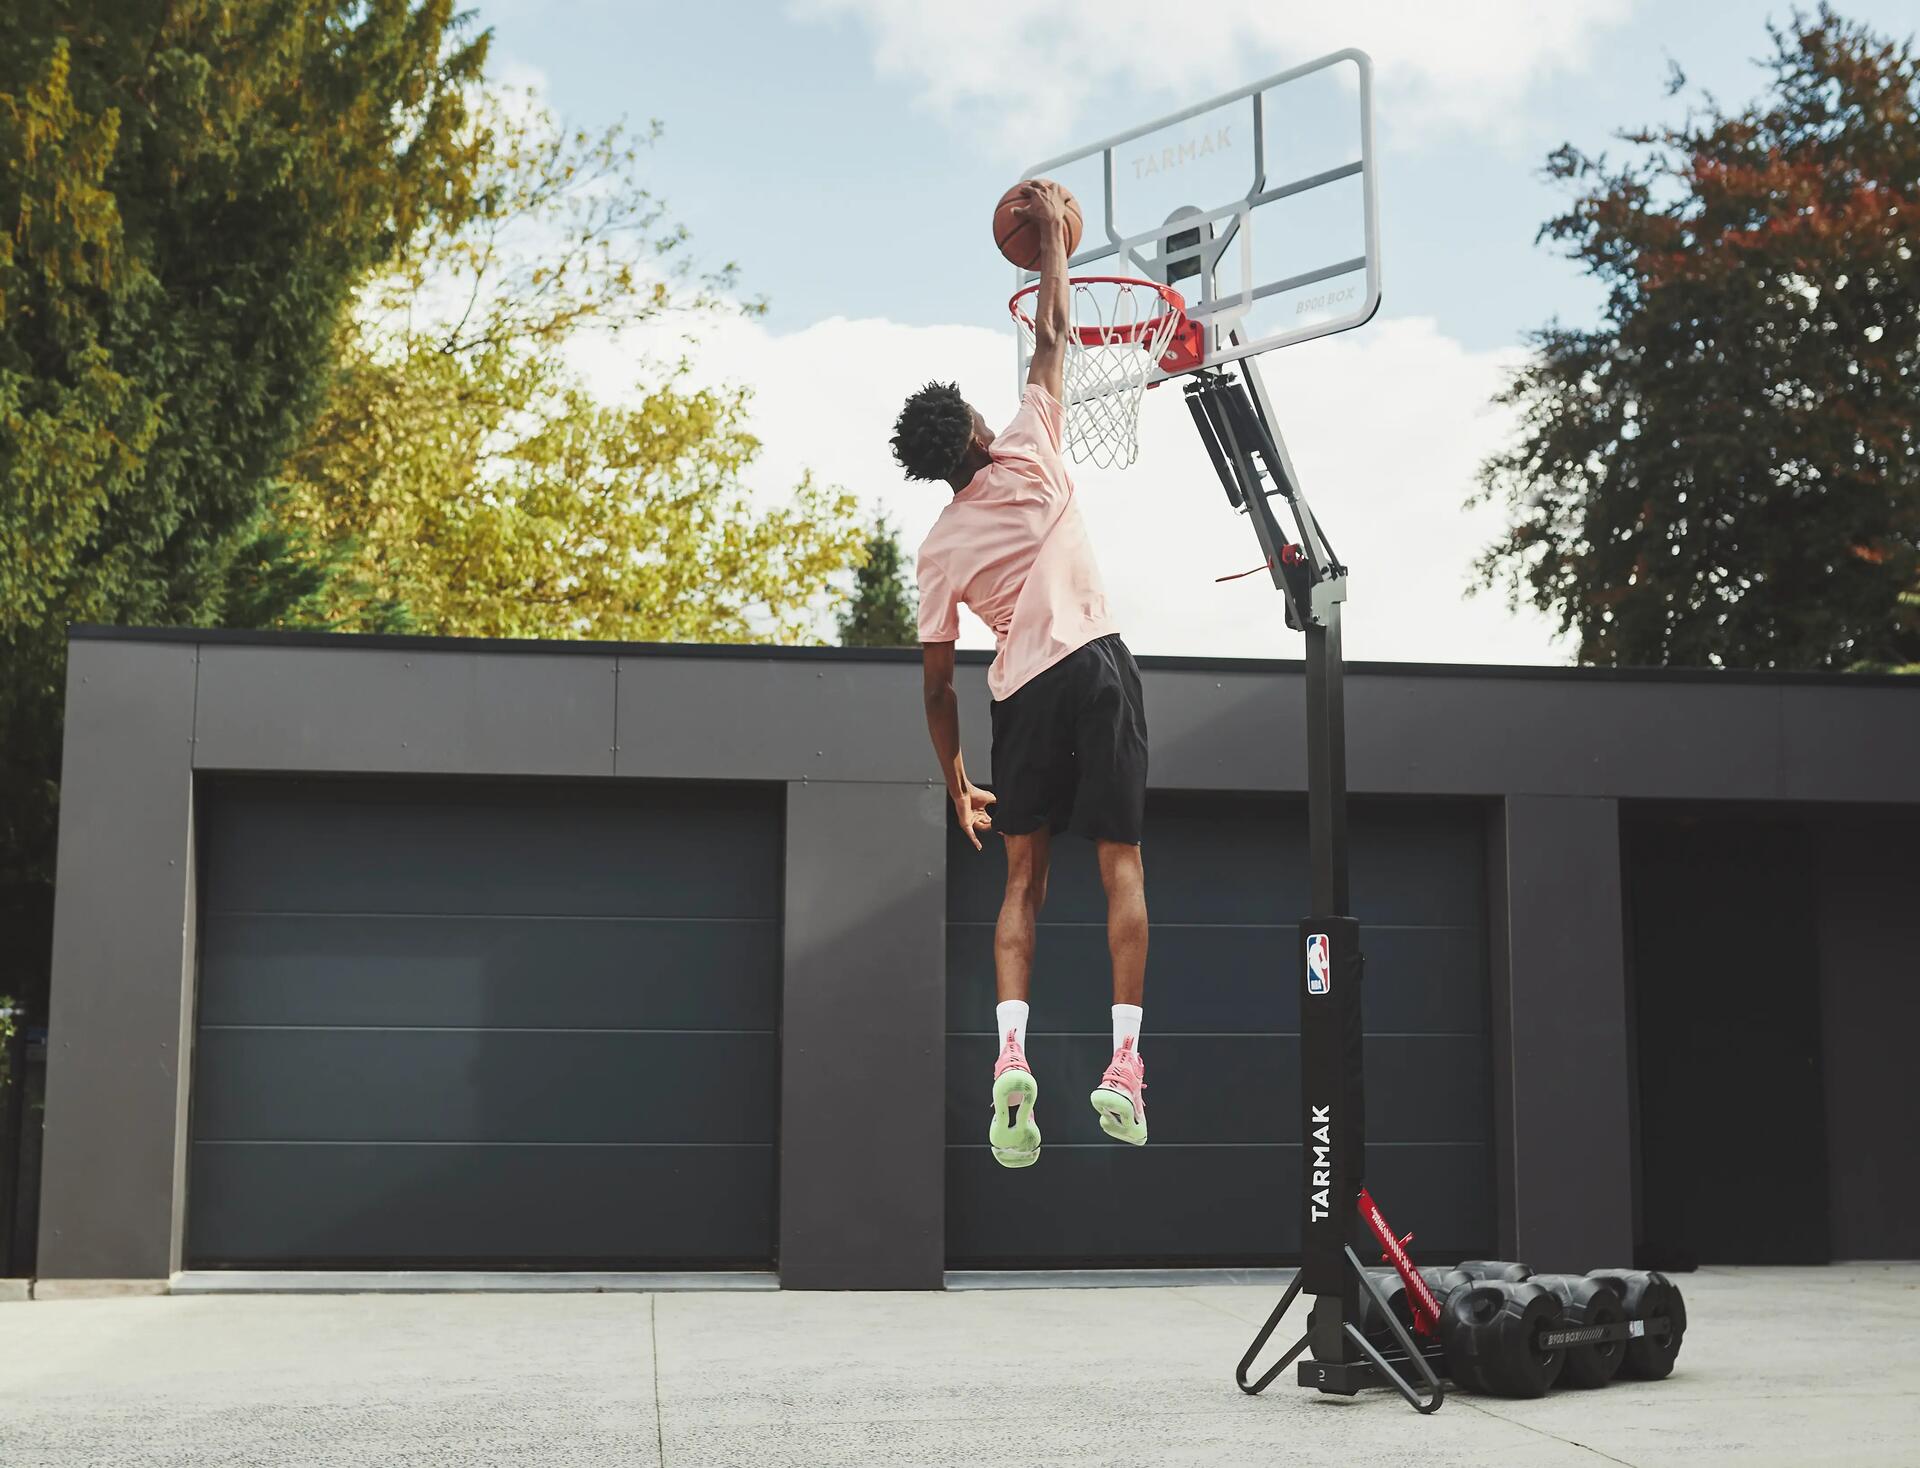 ¿Qué es mejor entrenar baloncesto en cancha cubierta o al aire libre?